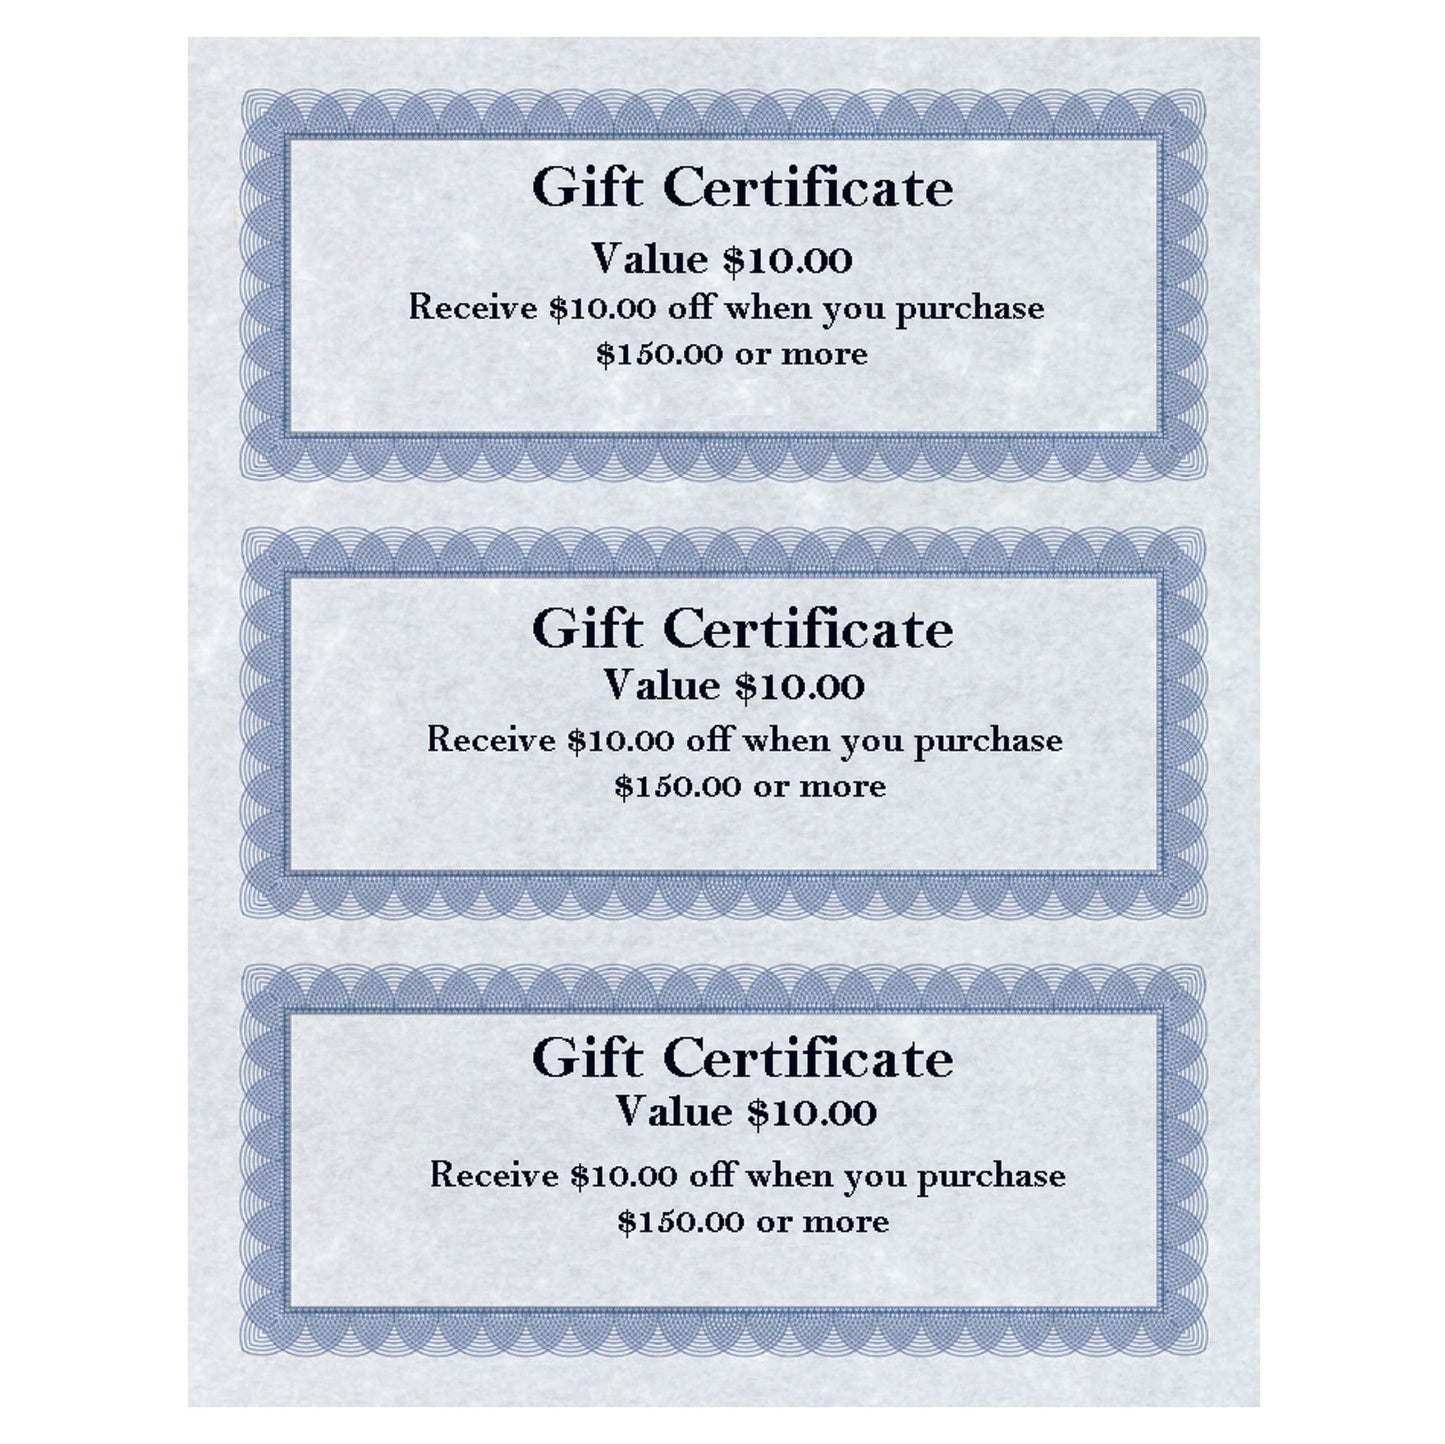 St. James® Gift Certificates, 24 lb Paper, Regent Blue, Pack of 75